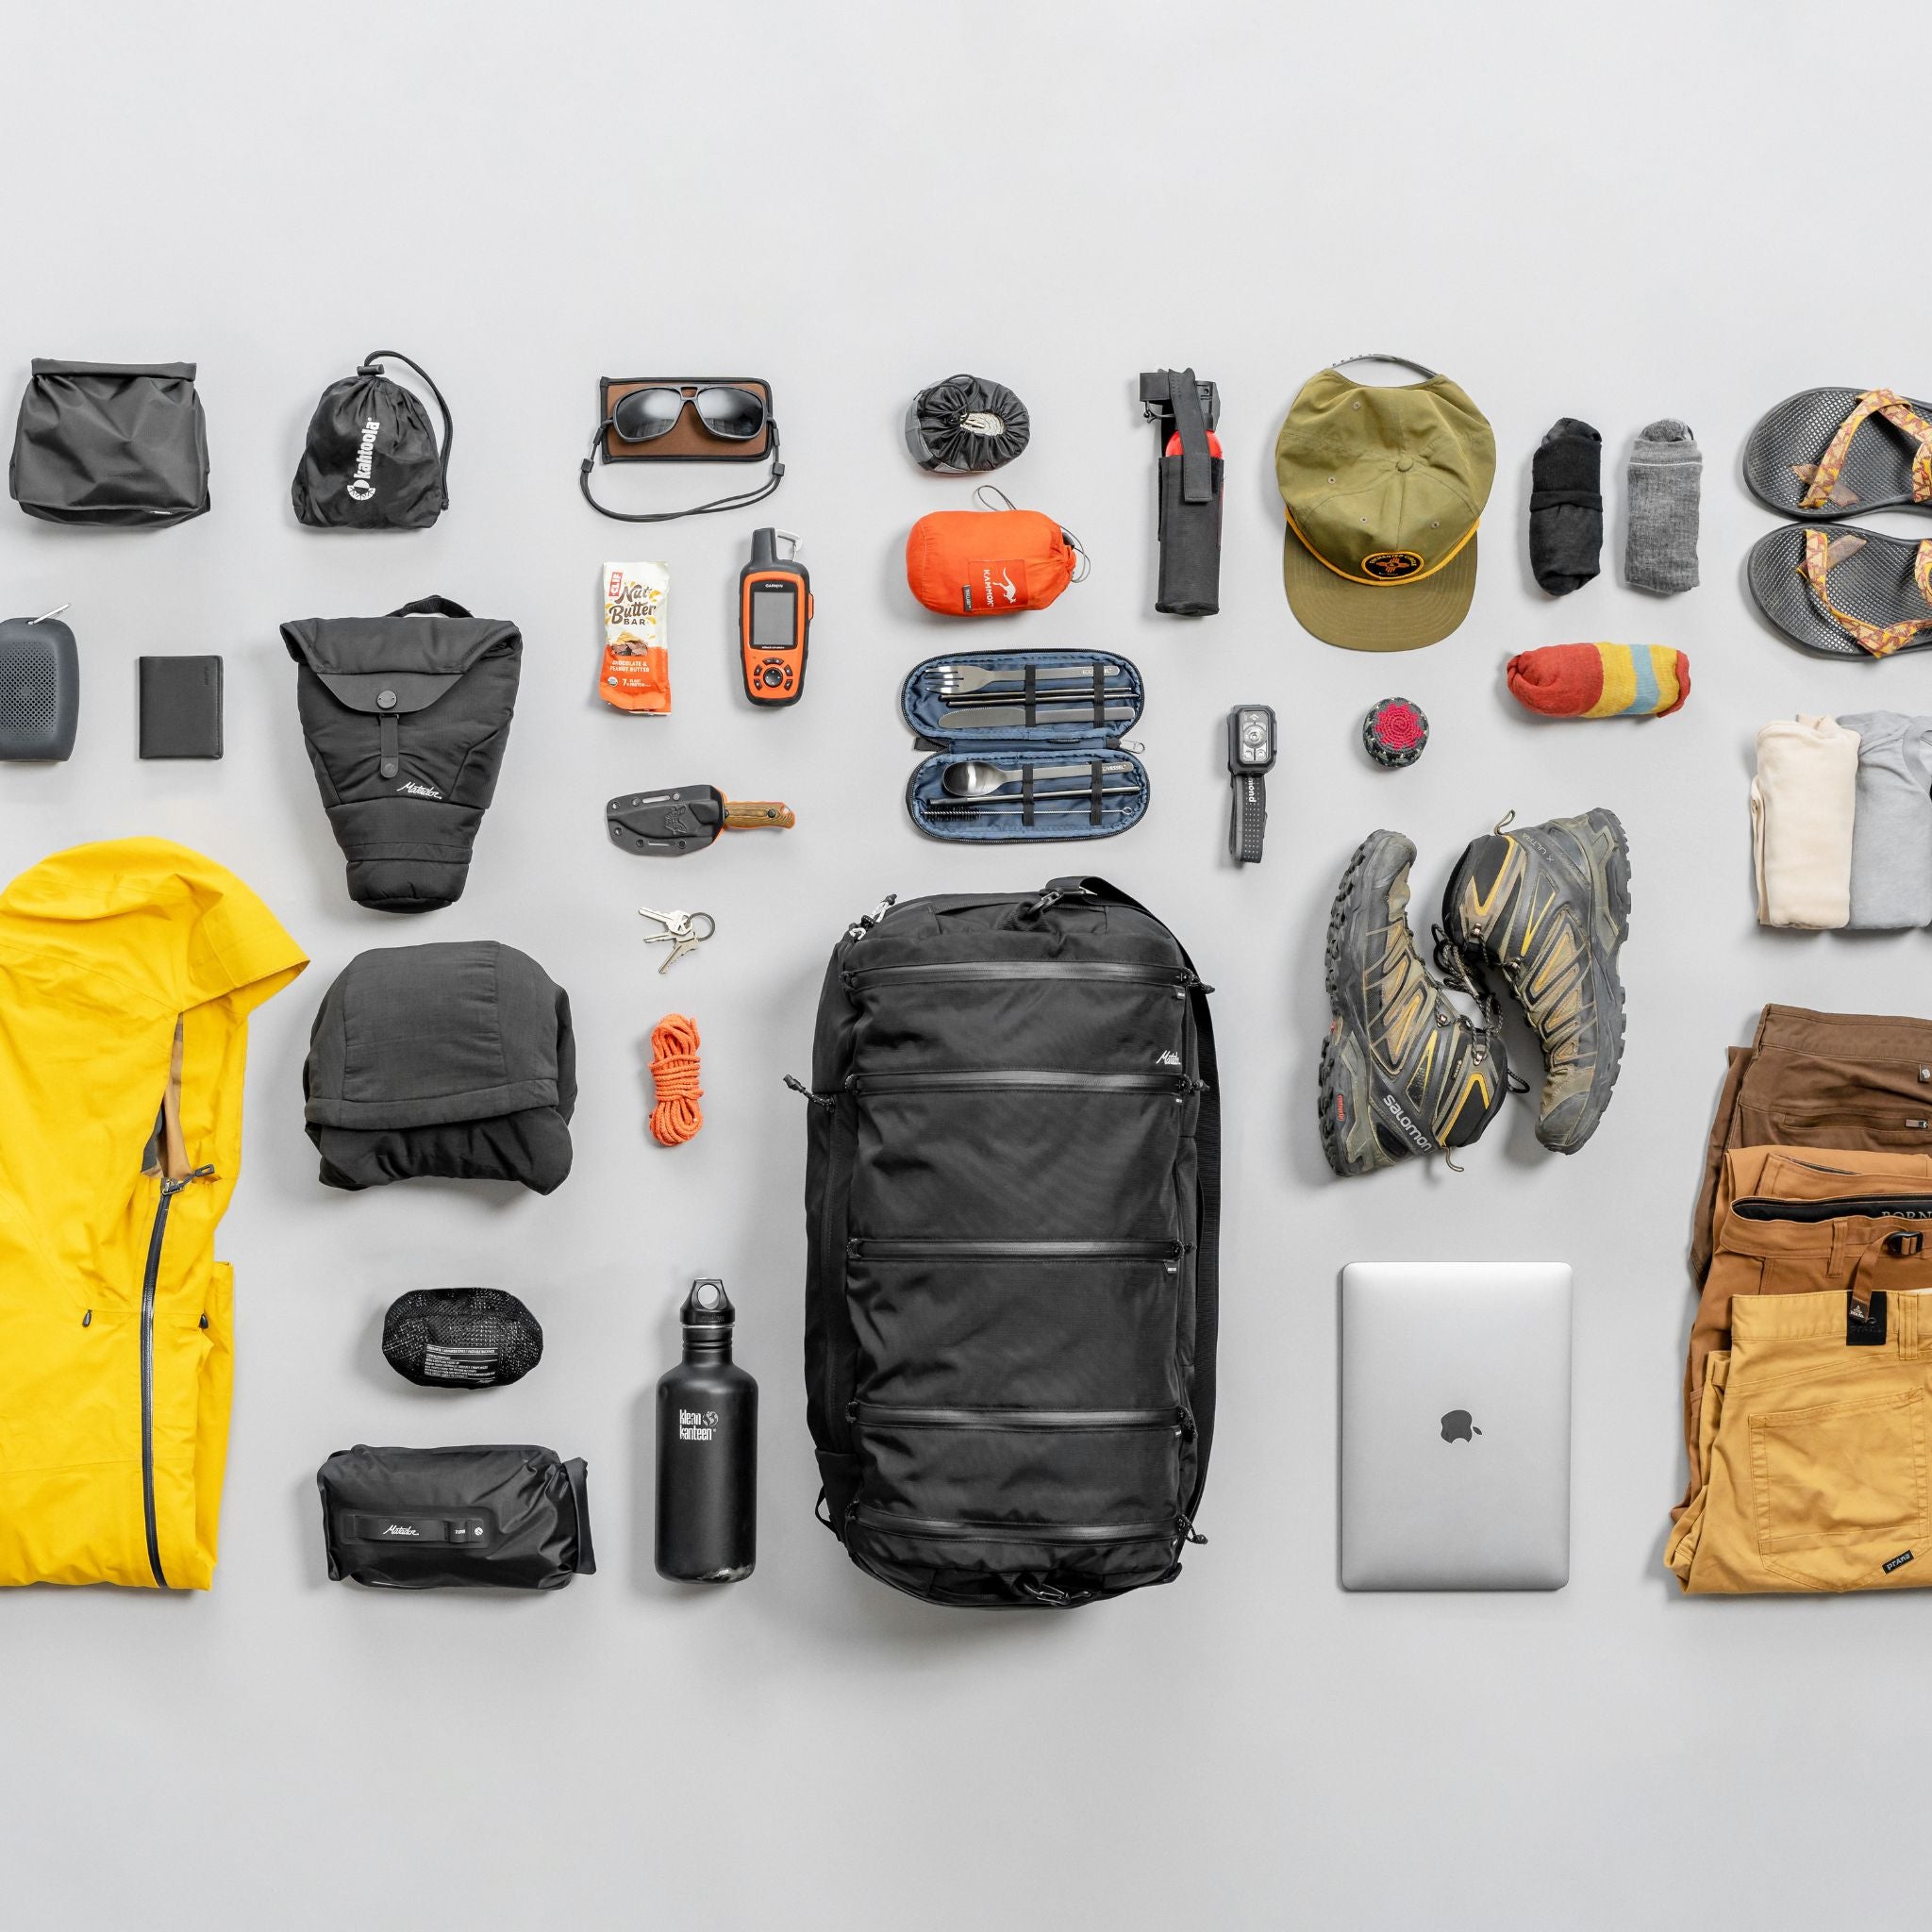 SEG45 Travel Pack - rejsetaske med 45 liters kapacitet - kan bæres som rygsæk og duffel bag - integrerede packing cubes - flatlay